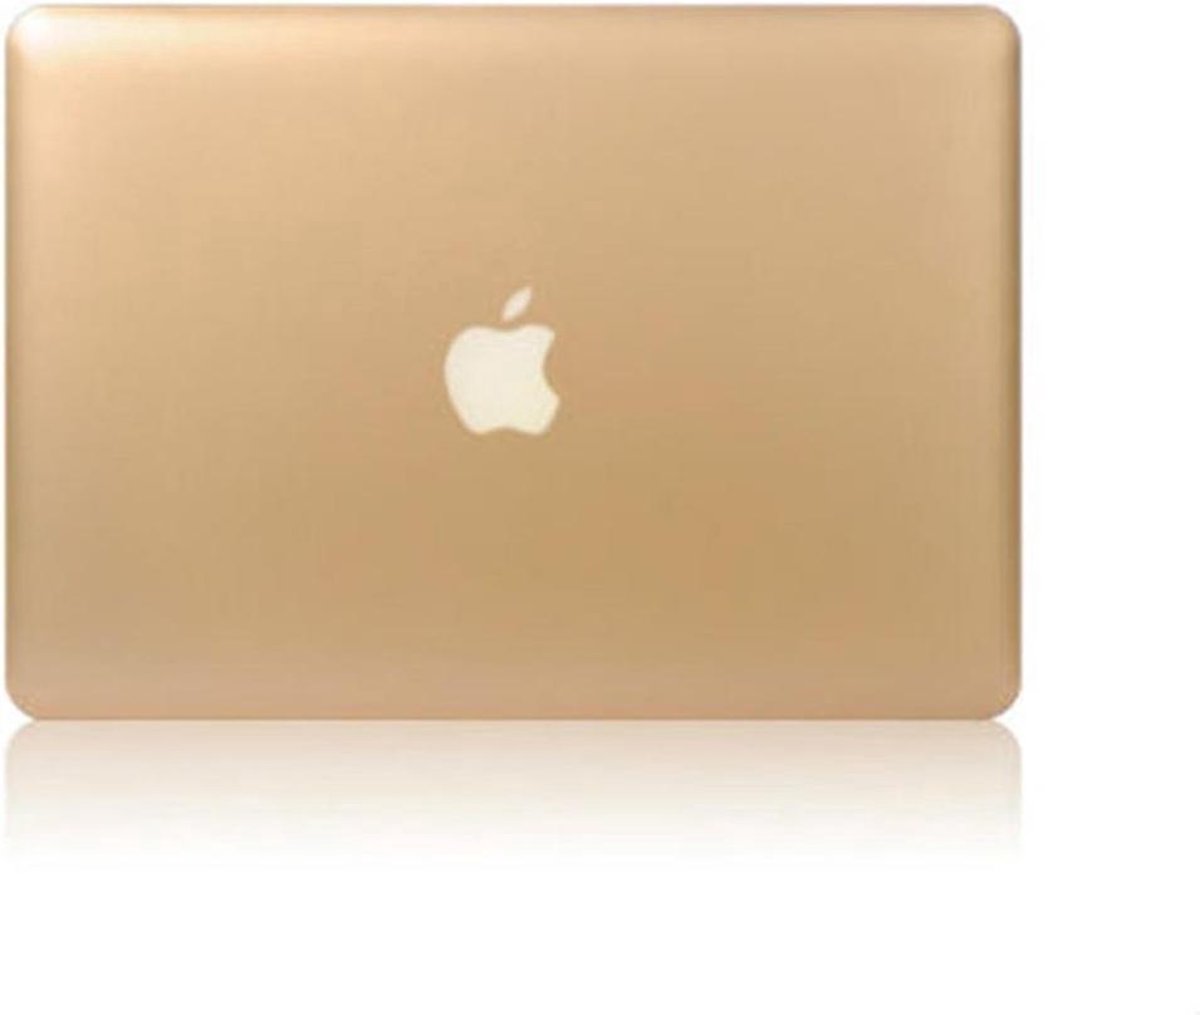 Macbook Case voor MacBook Air 11 inch - Laptoptas - Metallic Hard case - Koper Goud